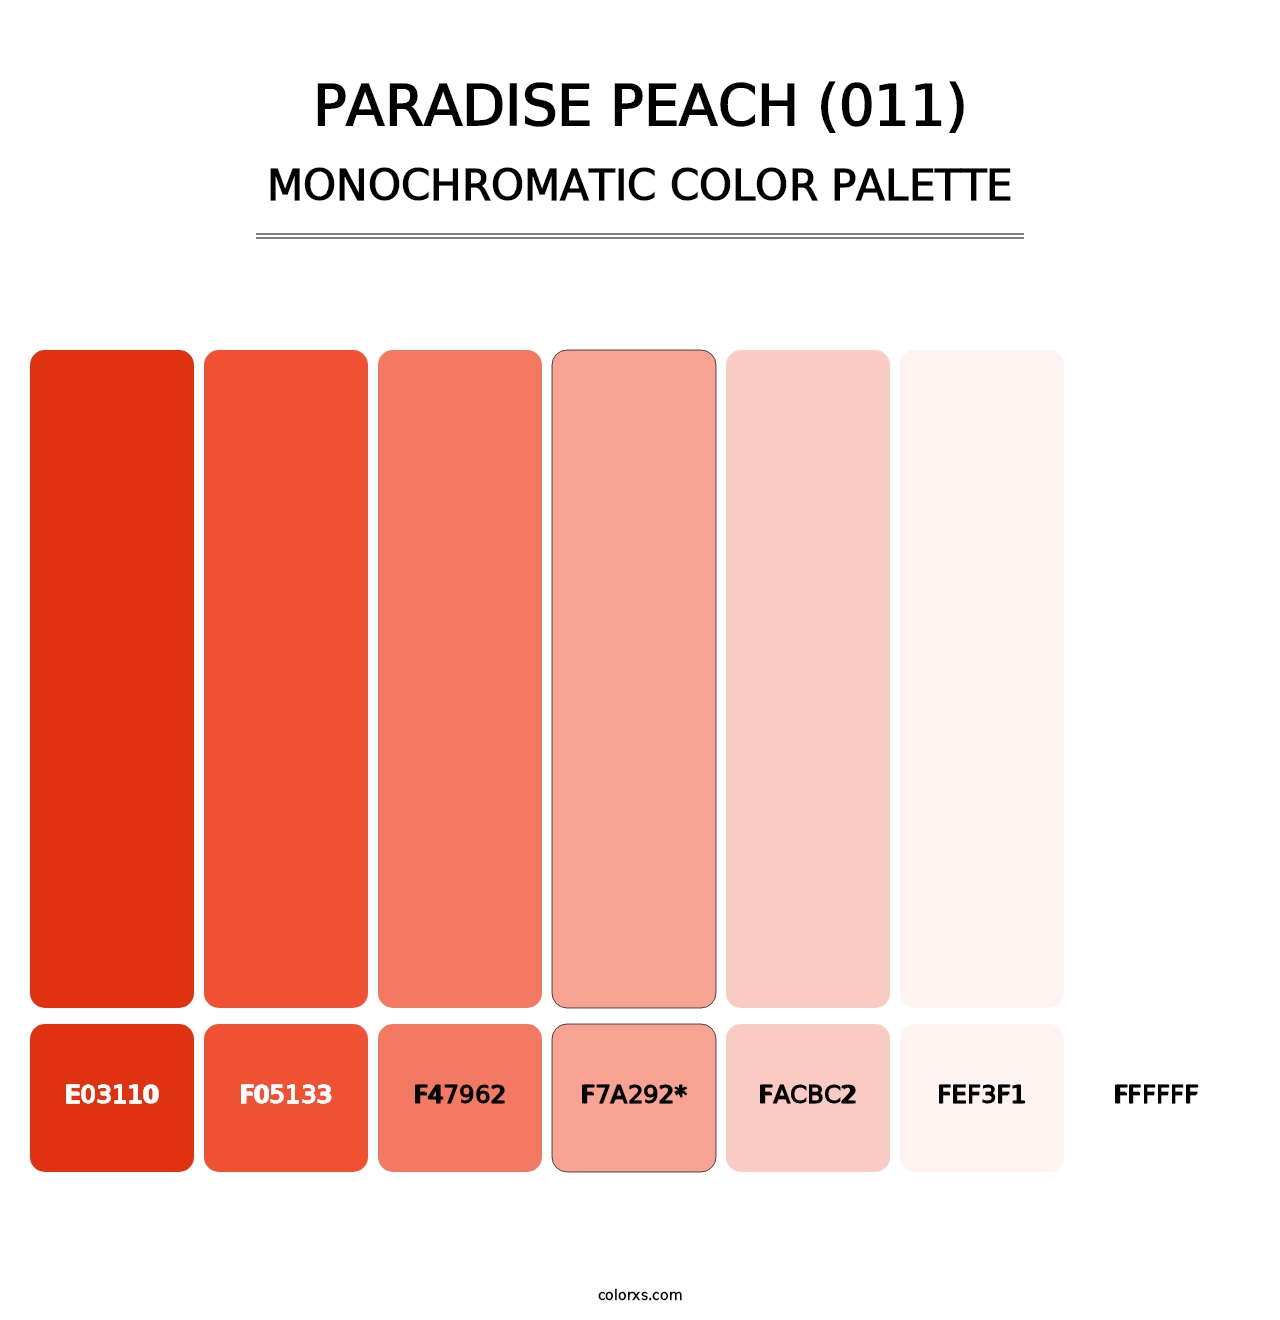 Paradise Peach (011) - Monochromatic Color Palette